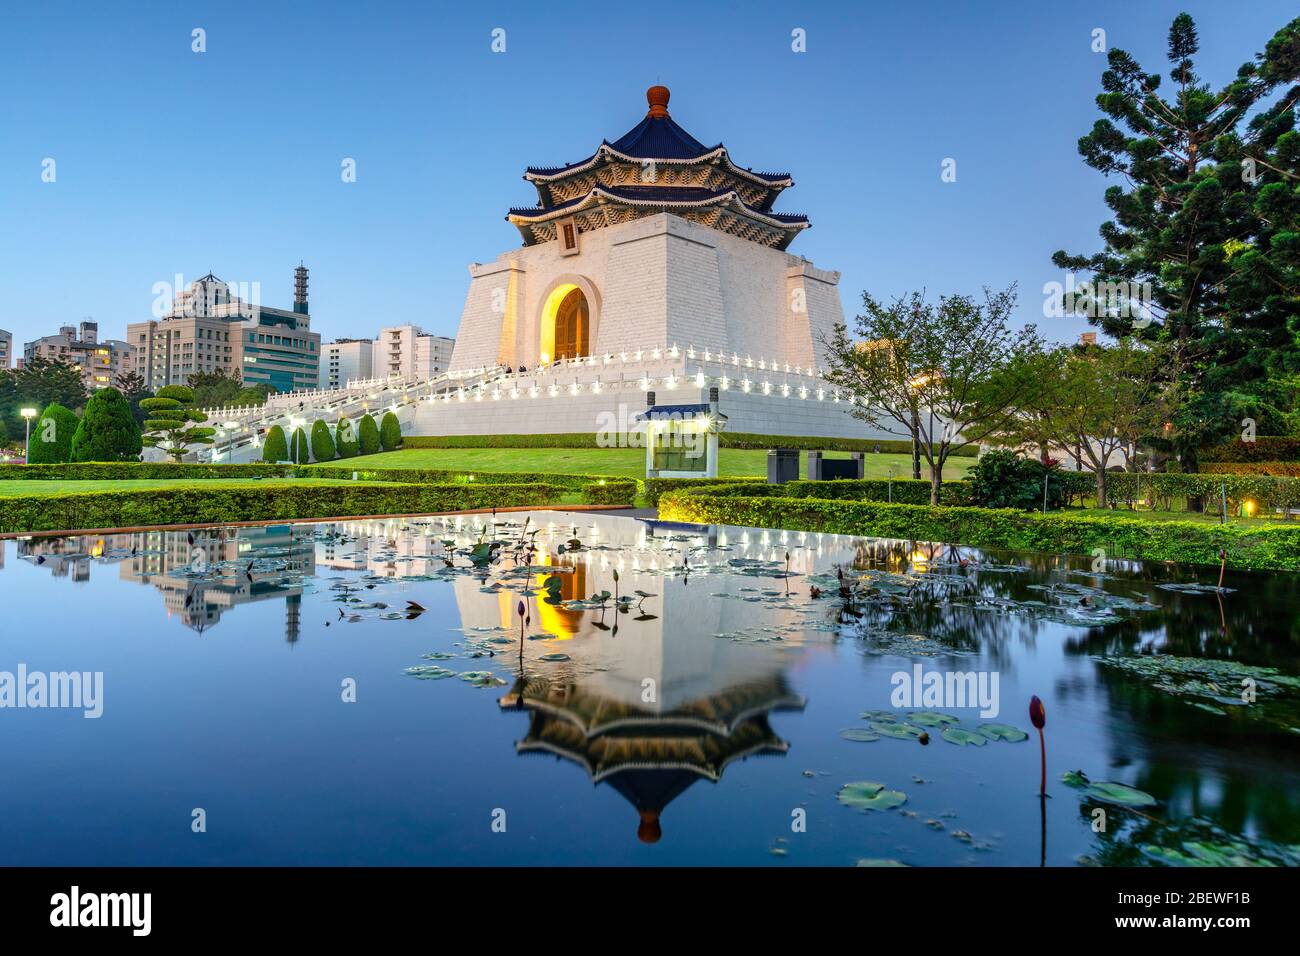 Chiang Kai-shek Memorial Hall in Taipei, taiwan. Die Übersetzung der chinesischen Schriftzeichen ist "chiang kai Chek Memorial Hall" Stockfoto